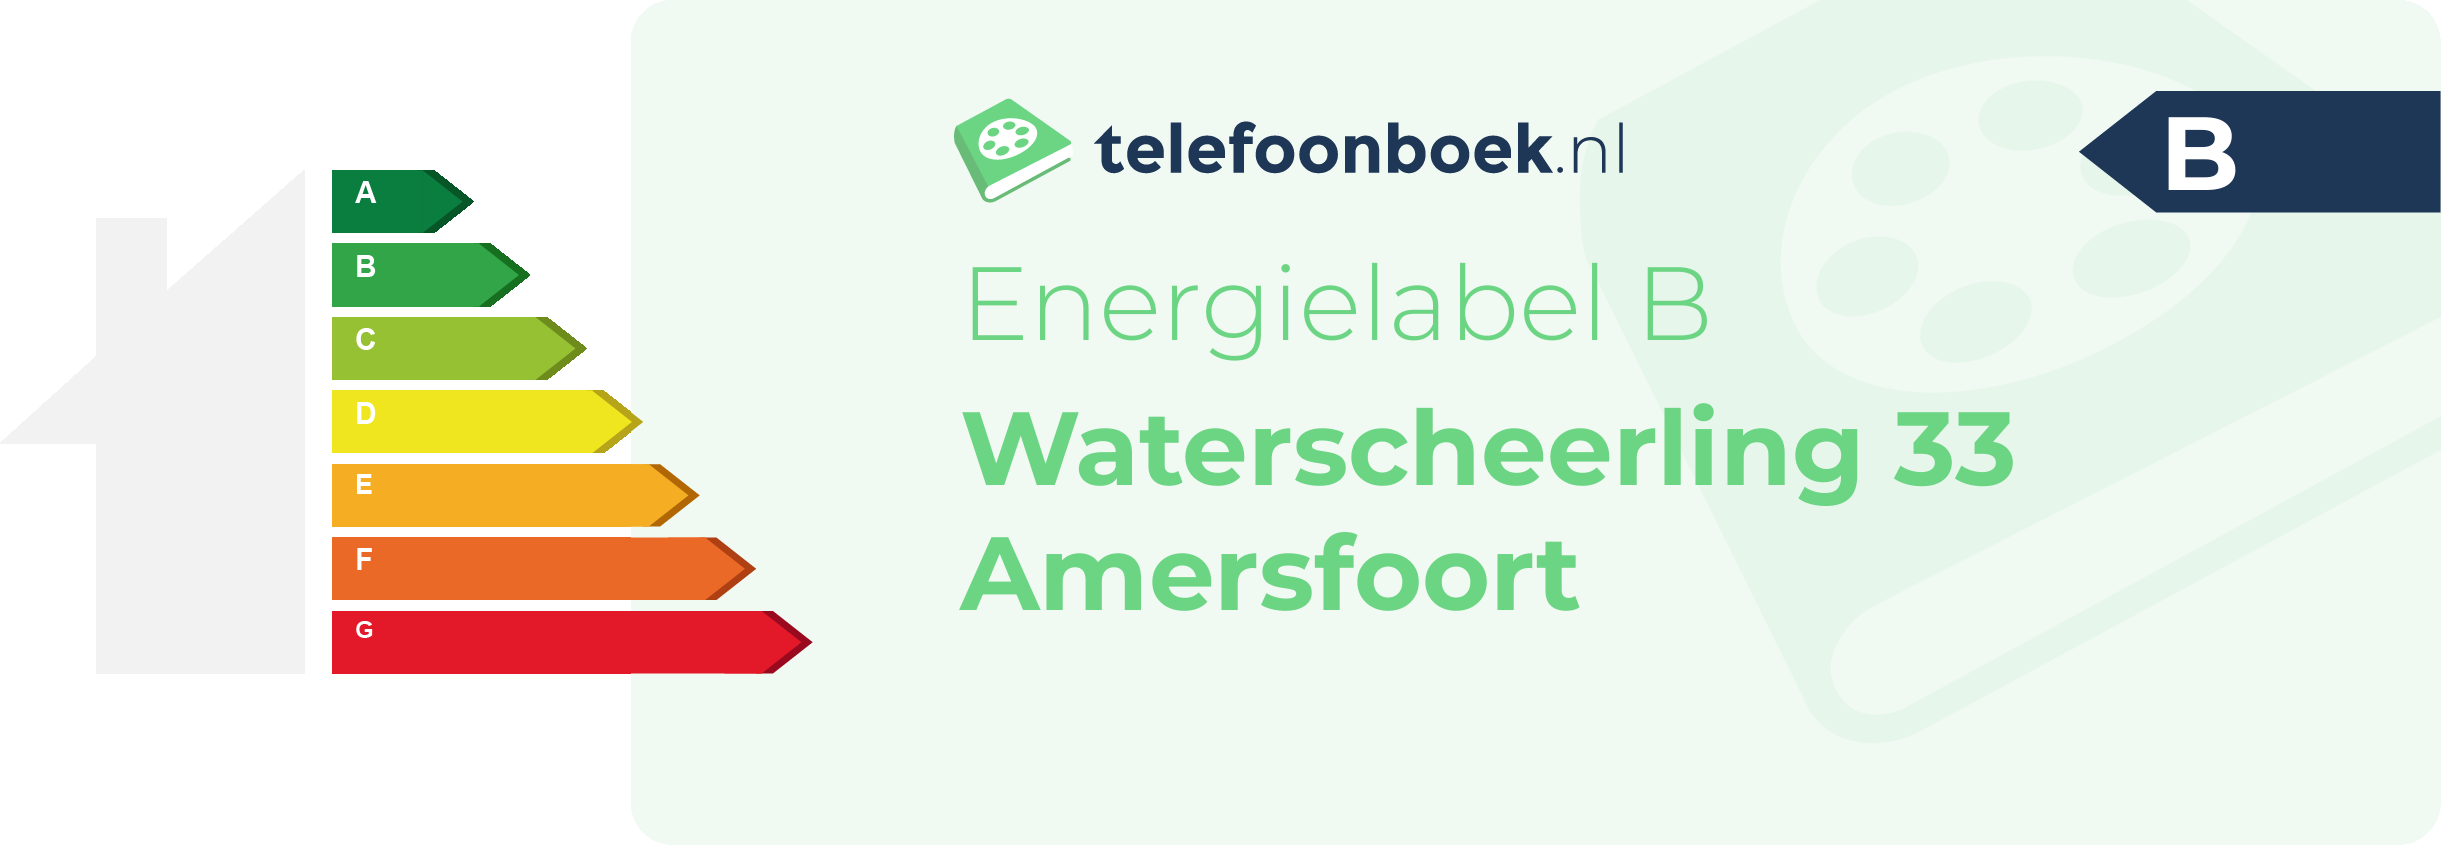 Energielabel Waterscheerling 33 Amersfoort